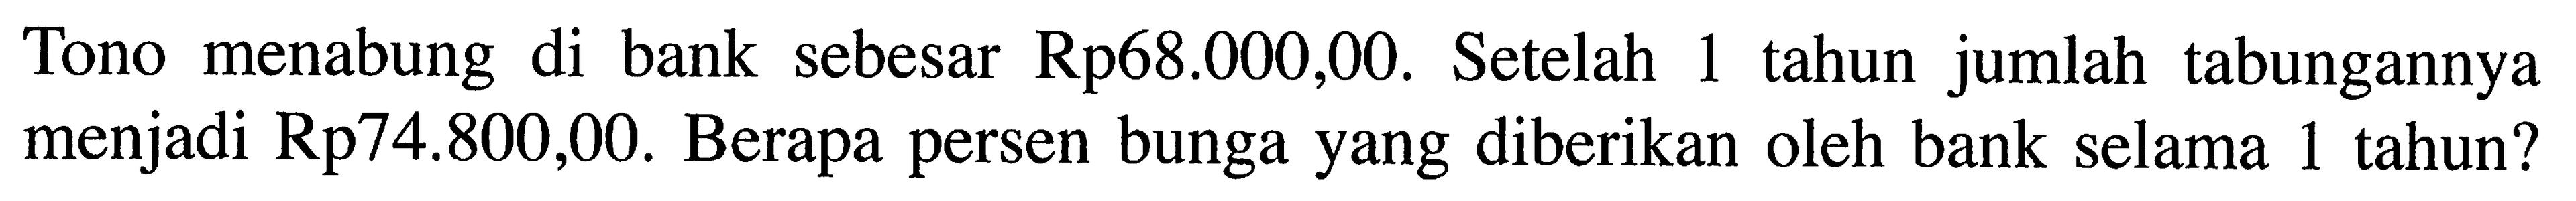 Tono menabung di bank sebesar Rp68.000,00. Setelah 1 tahun jumlah tabungannya menjadi Rp74.800,00. Berapa persen bunga yang diberikan oleh bank selama 1 tahun?